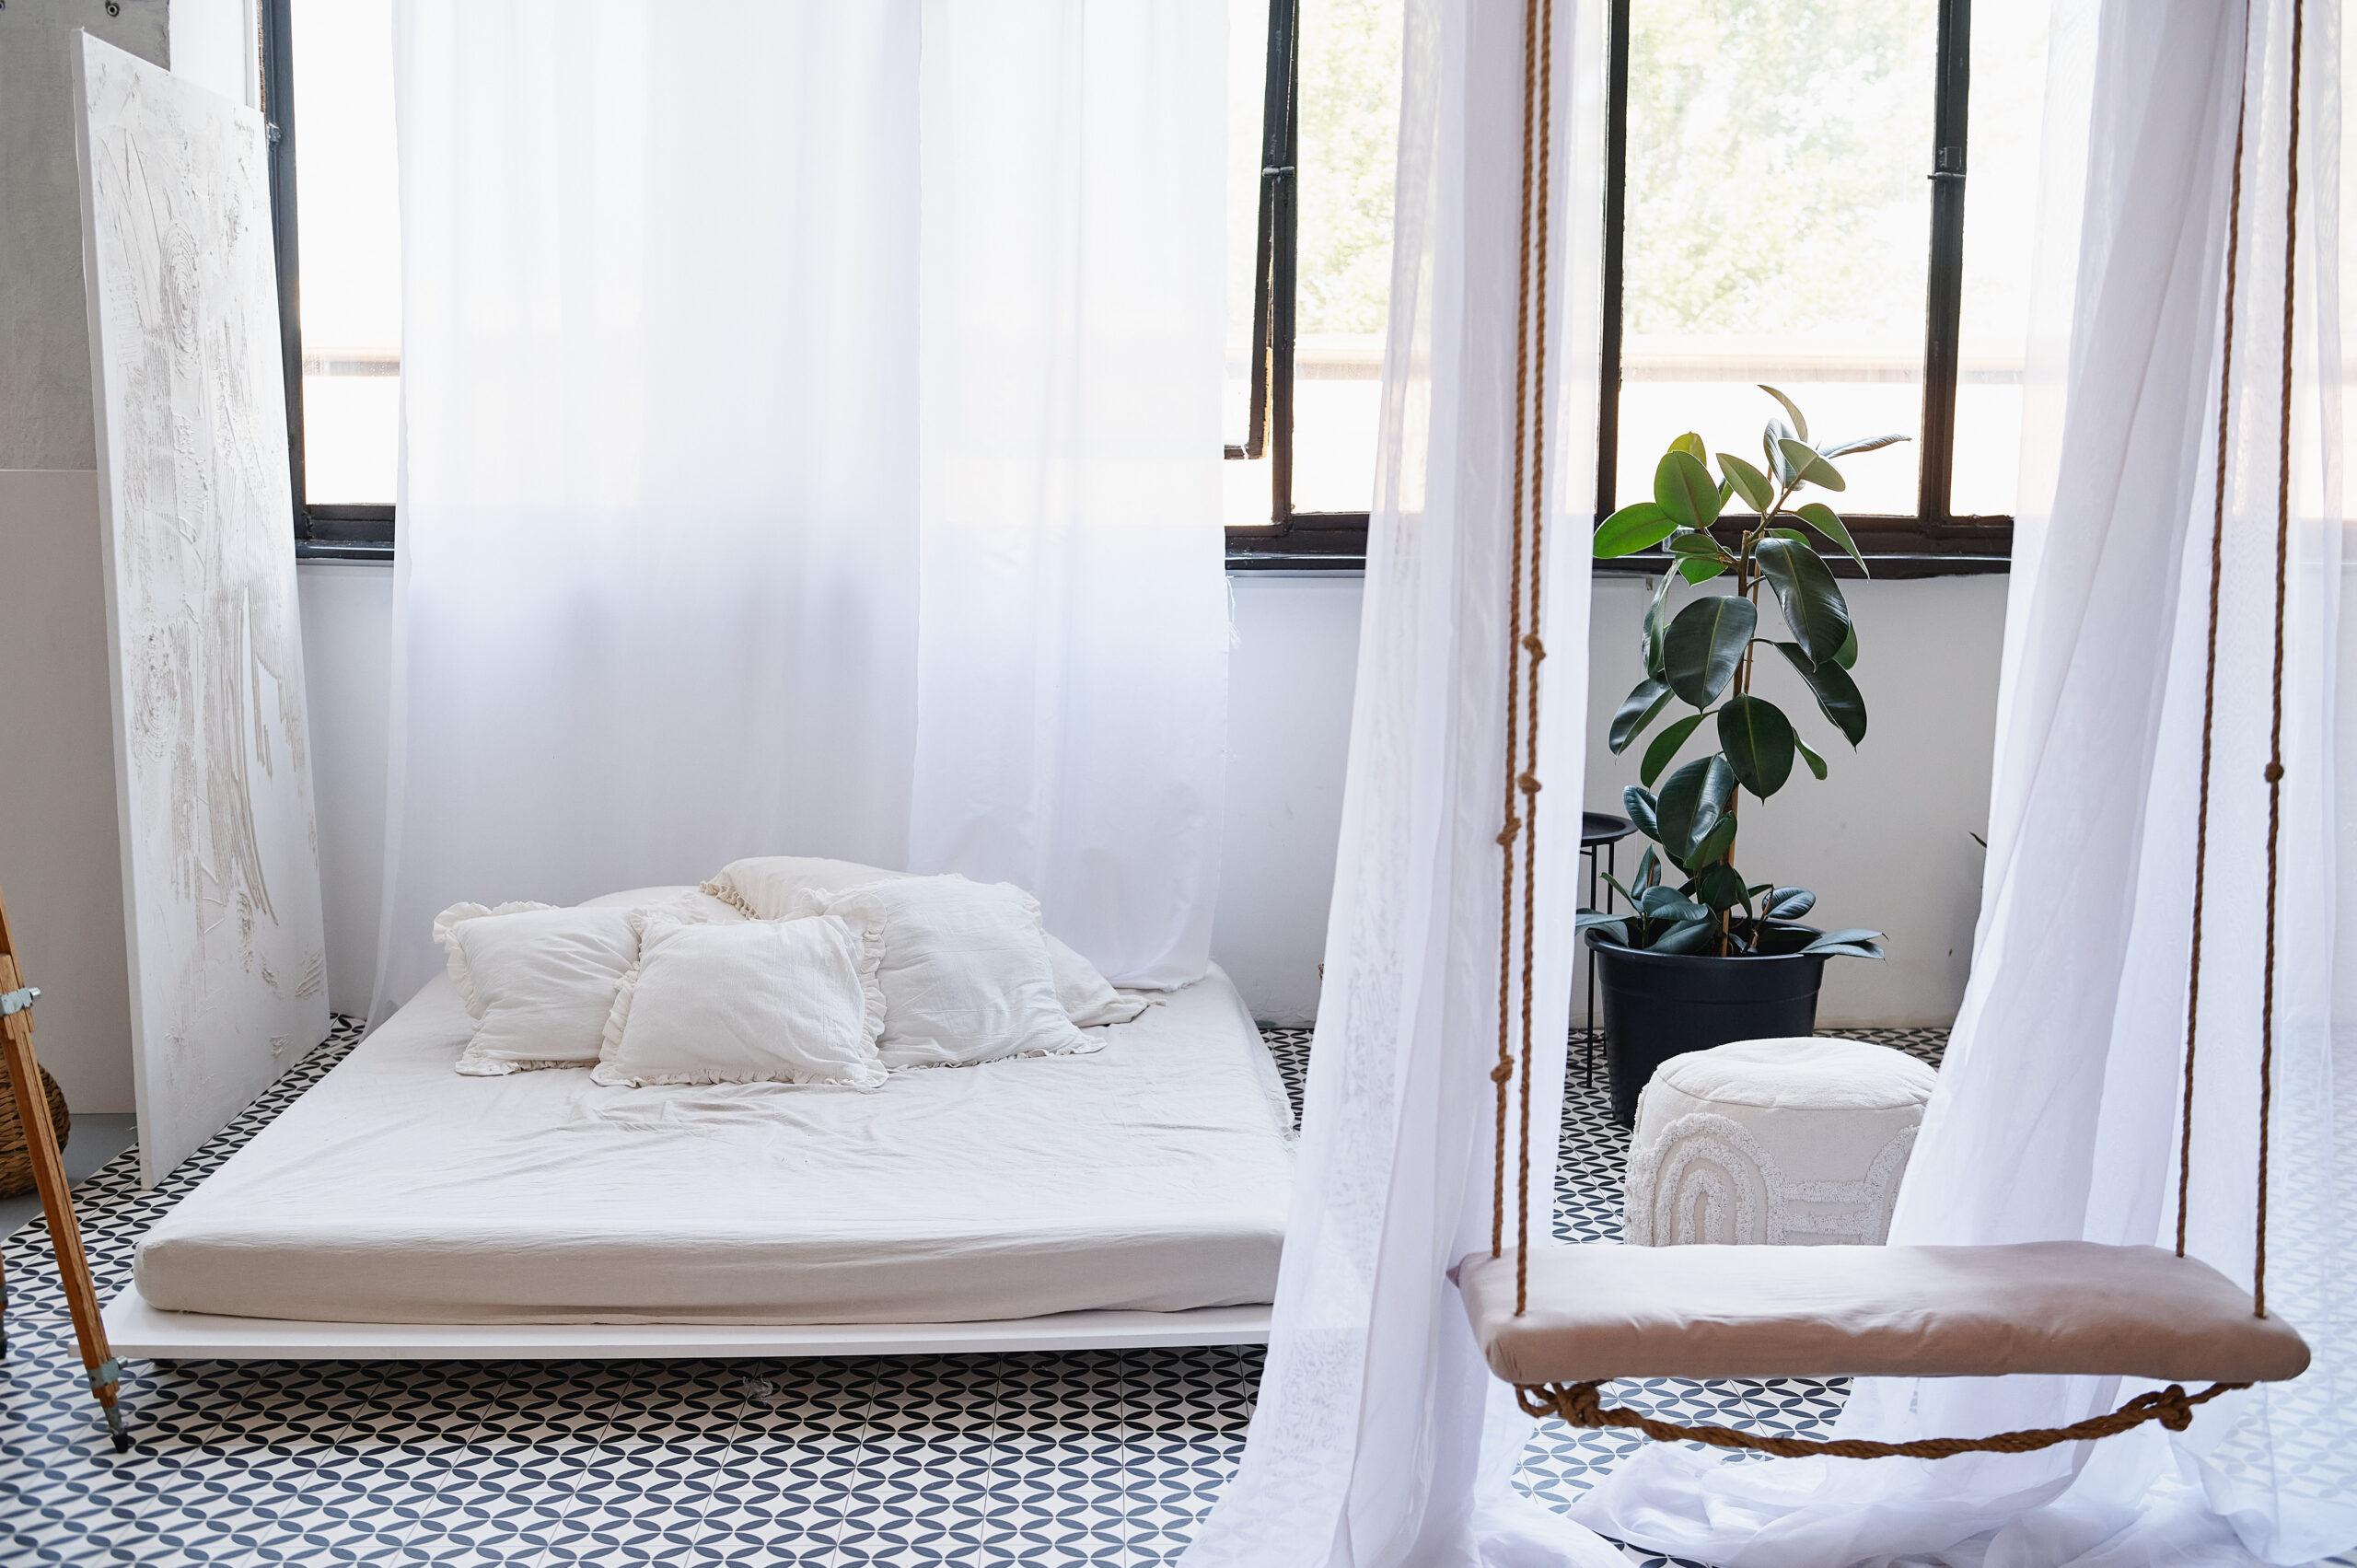 Wyposażenie sali LOFT - łóżko z białą pościelą na tle ściany z dużymi oknami, przed nim wisząca huśtawka.